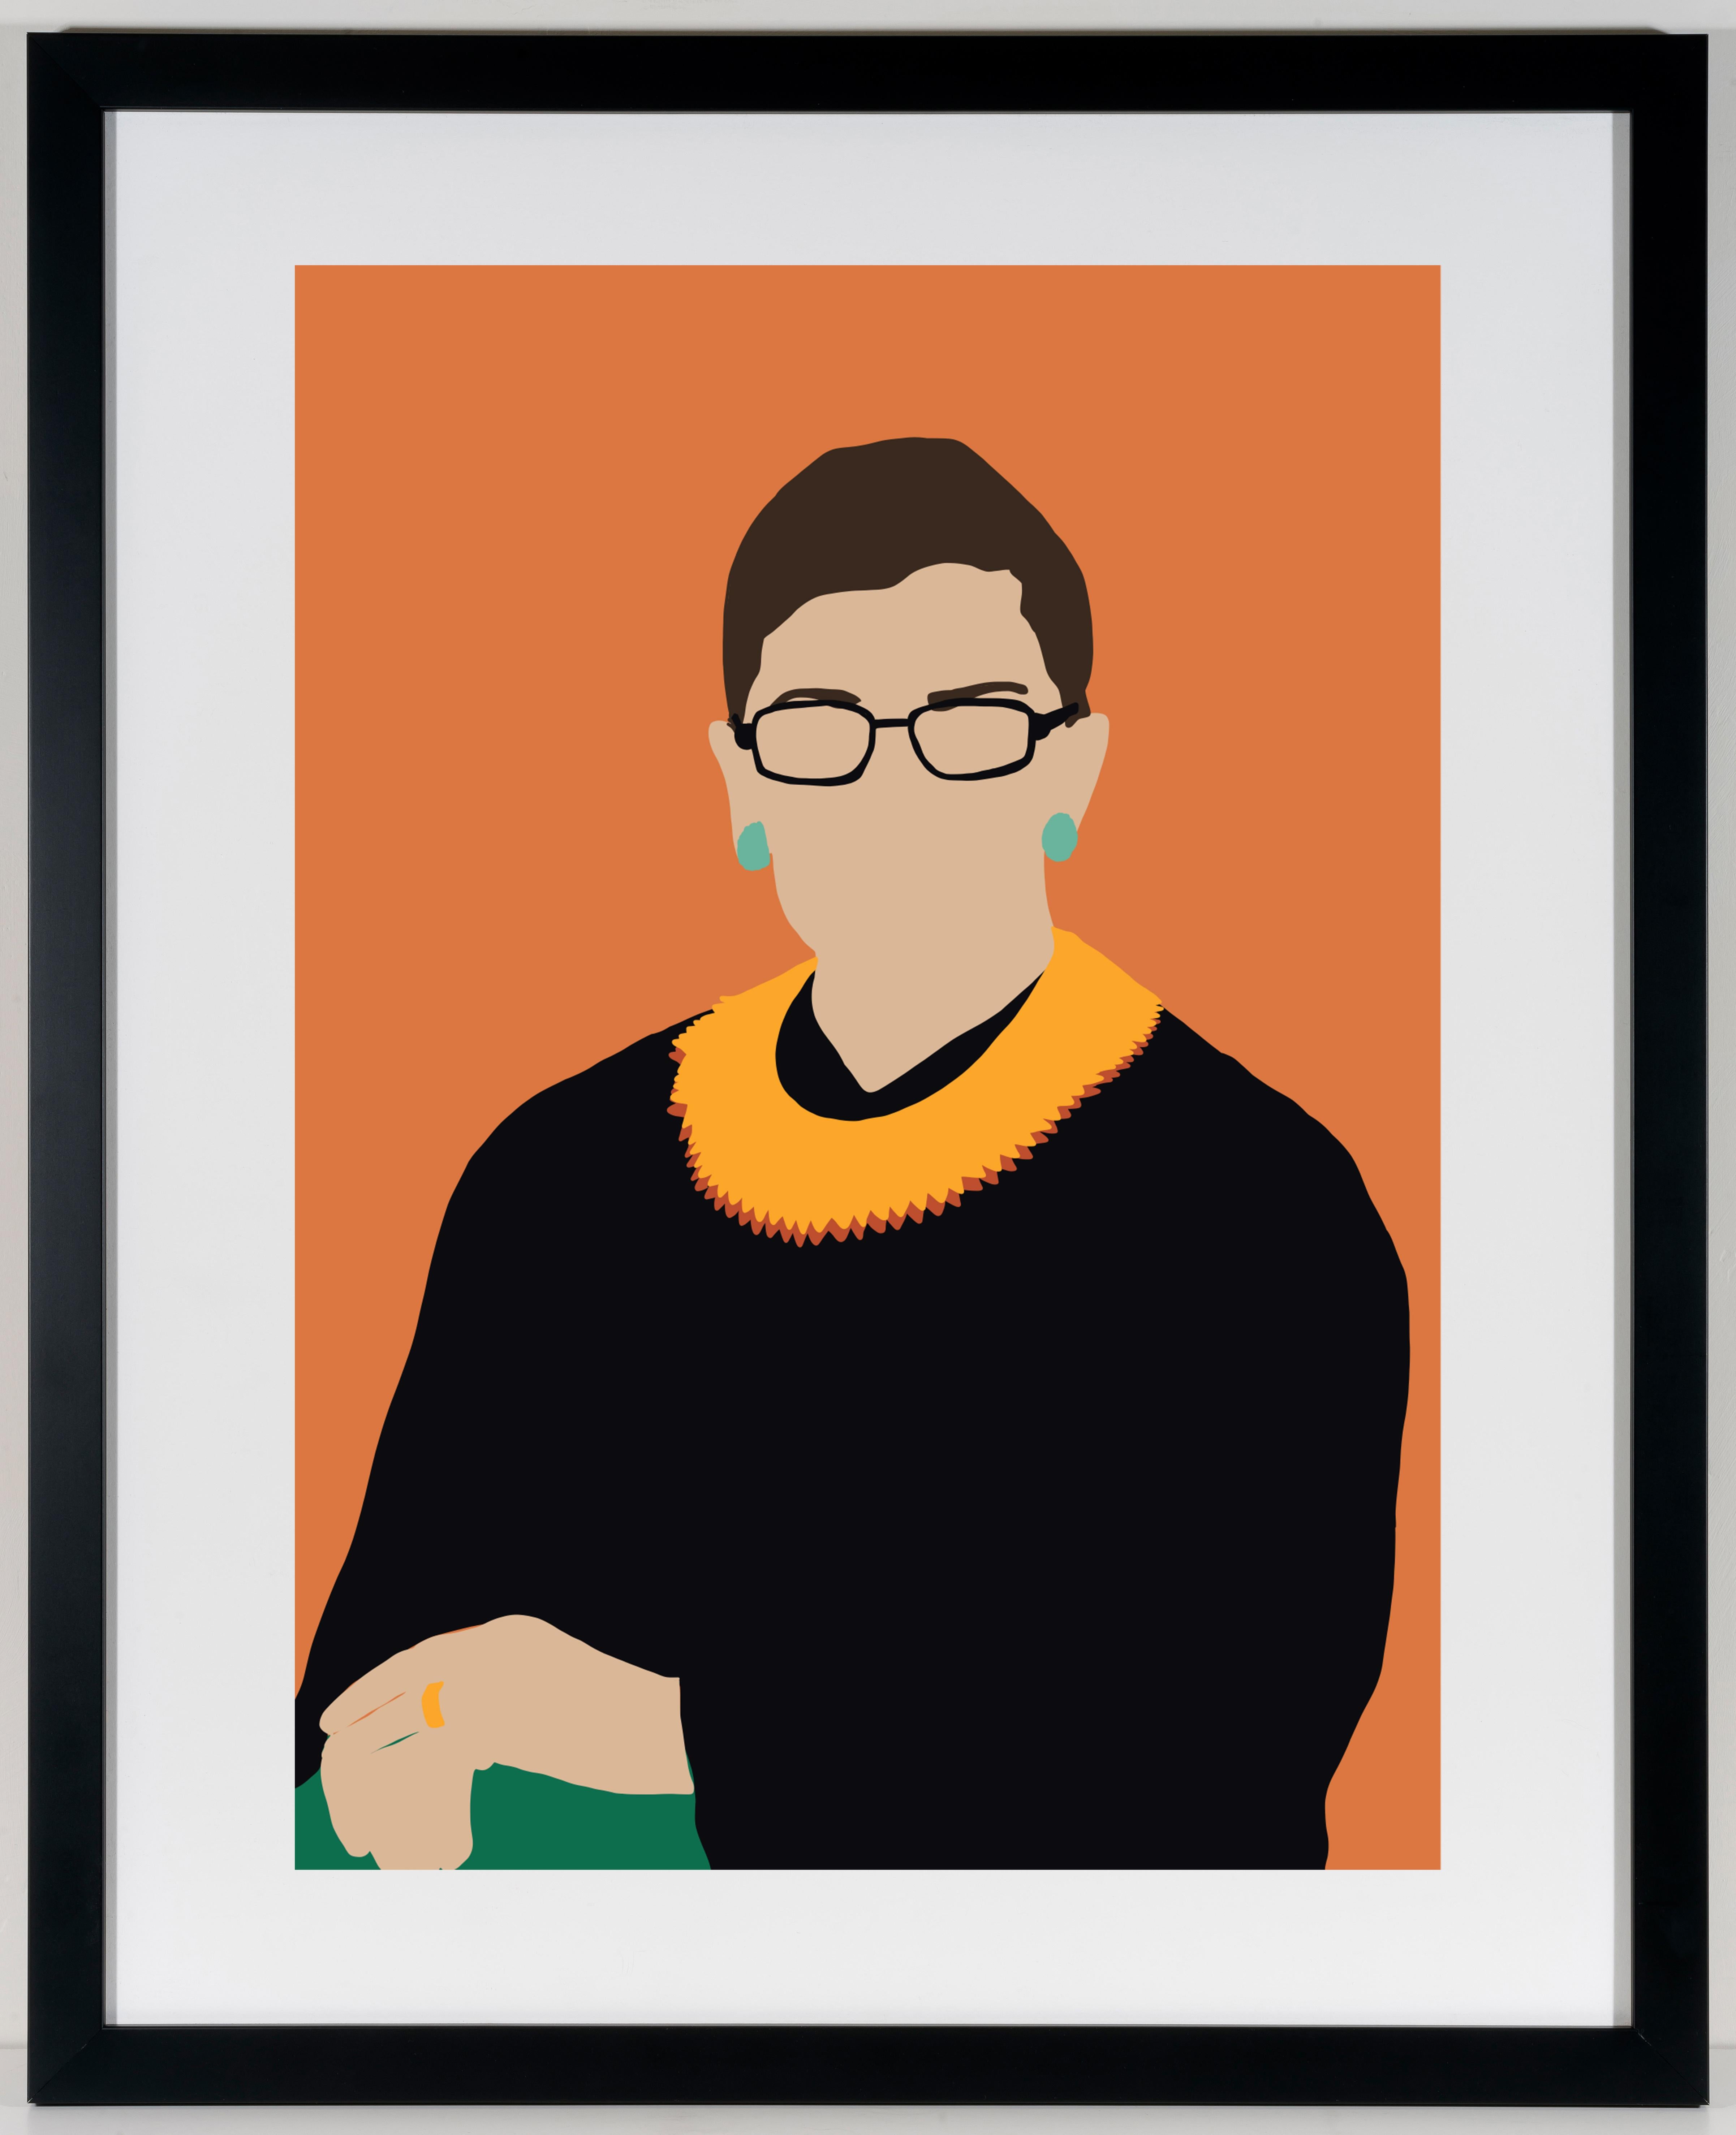 Portrait contemporain encadré RBG de Ruth Bader Ginsberg, juge de la Cour suprême des États-Unis 